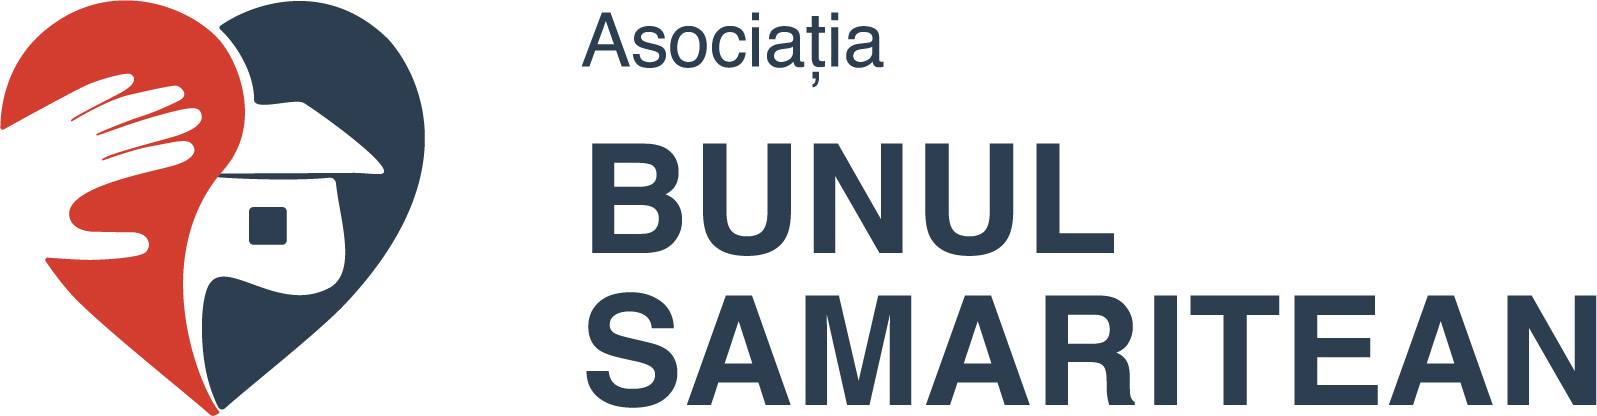 Asociatia United Cristian Aid Bunul Samaritean logo